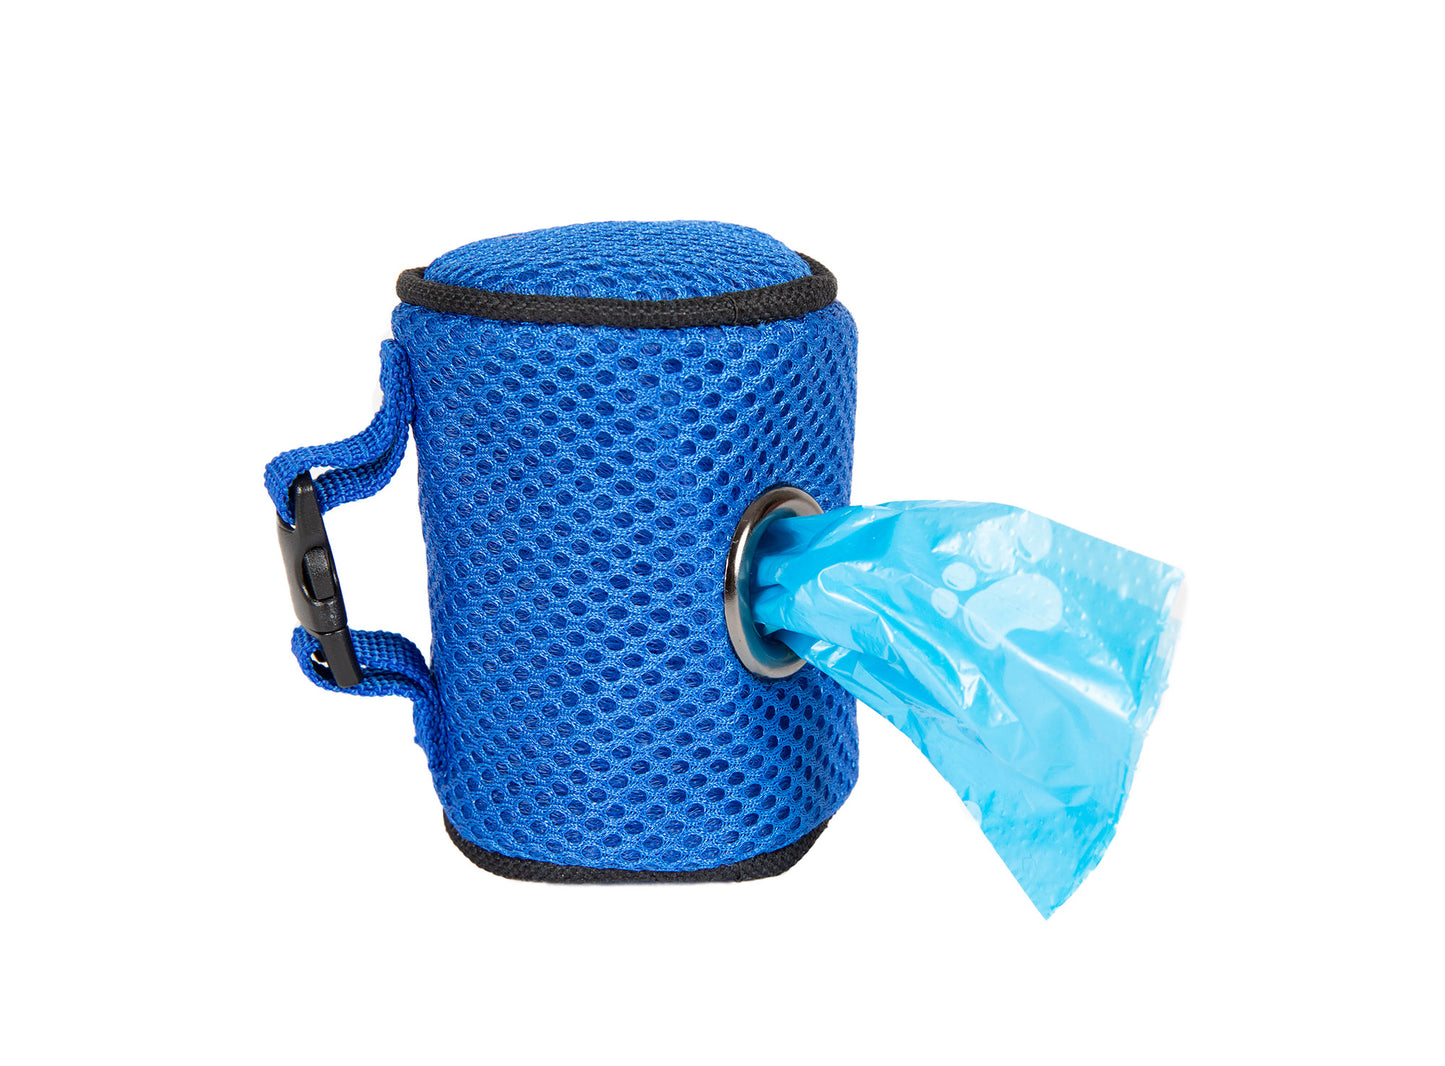 Mesh Bag Holders - 7 Color Options - Poop Bag Holder